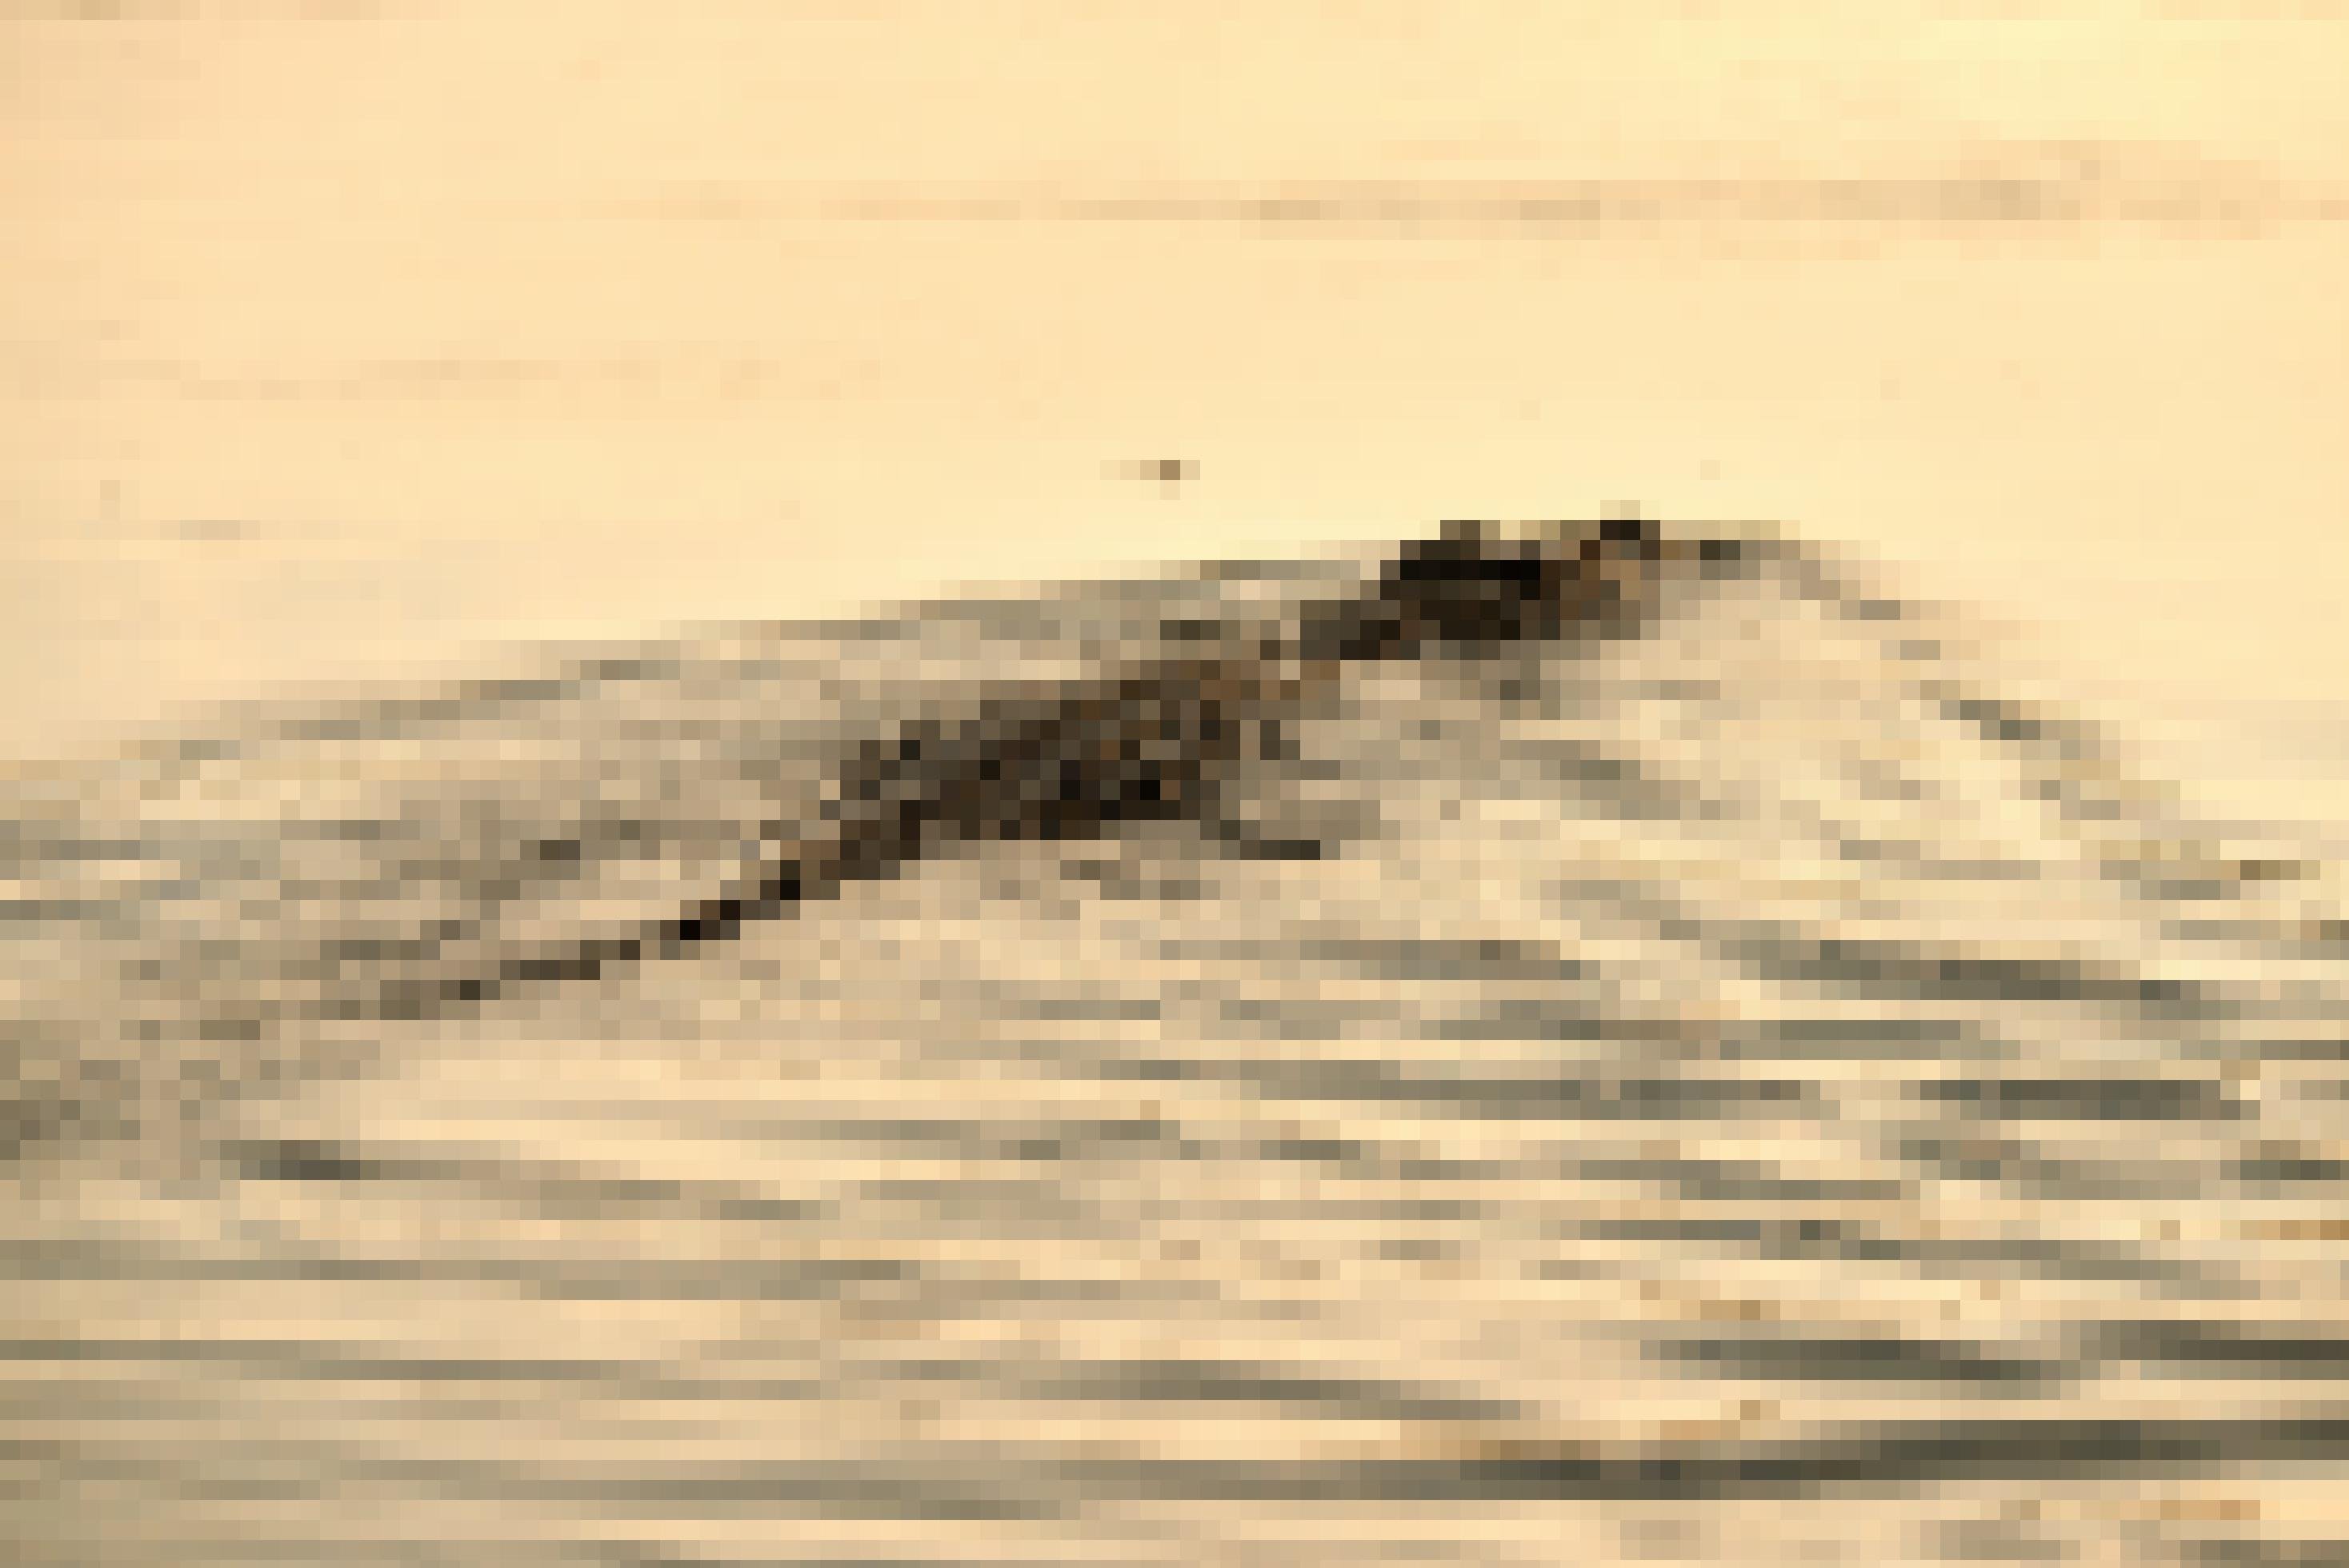 Ein Krokodil schwimmt durch das bräunliche Wasser